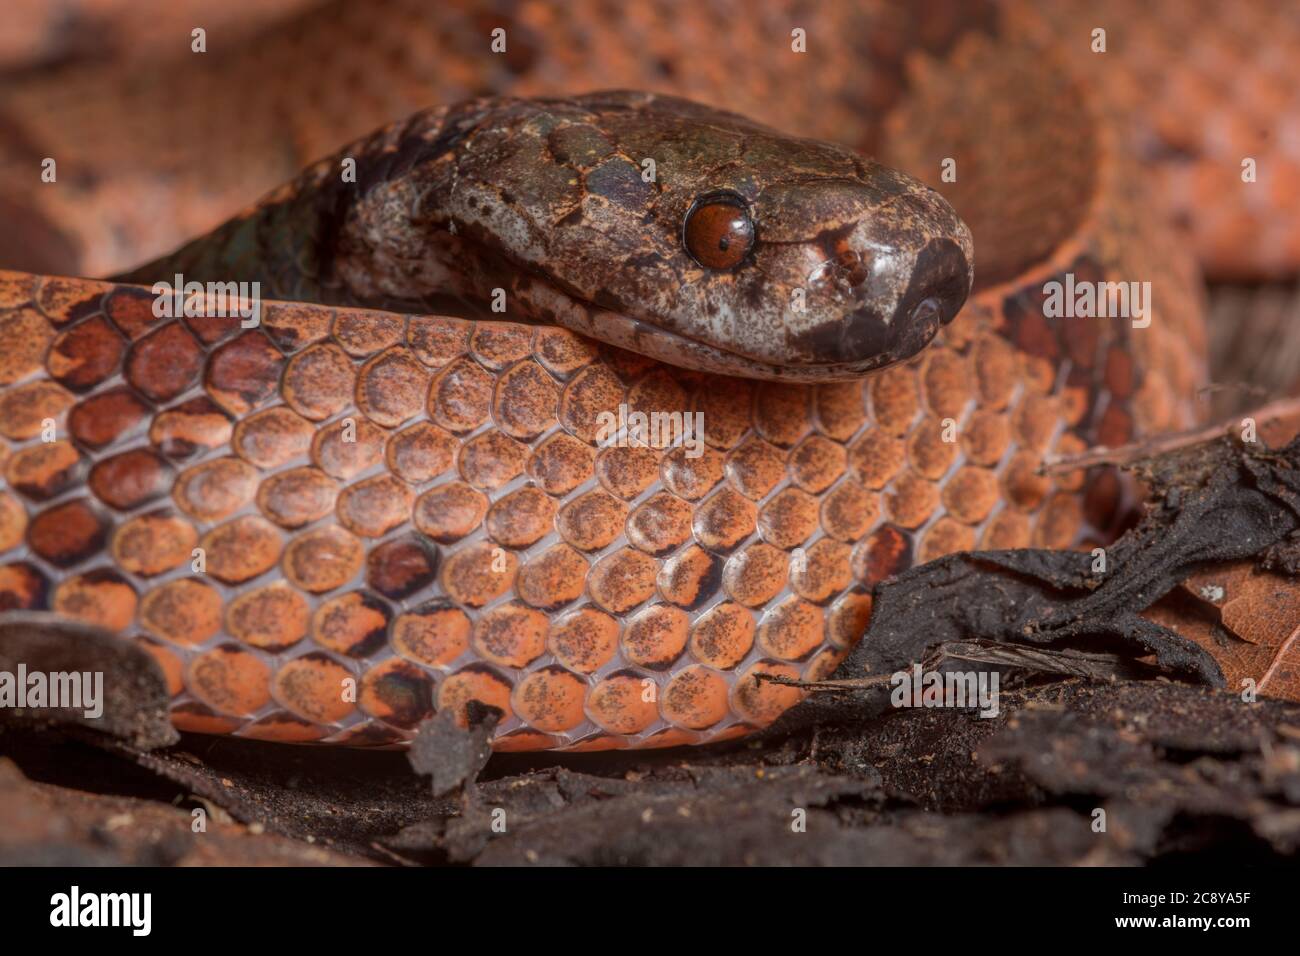 Il serpente sgranato a collo scuro è stato recentemente diviso in due specie, una delle quali era questa: L'Asshenodipsas borneensis, il serpente da mangiare sgranato borneano. Foto Stock